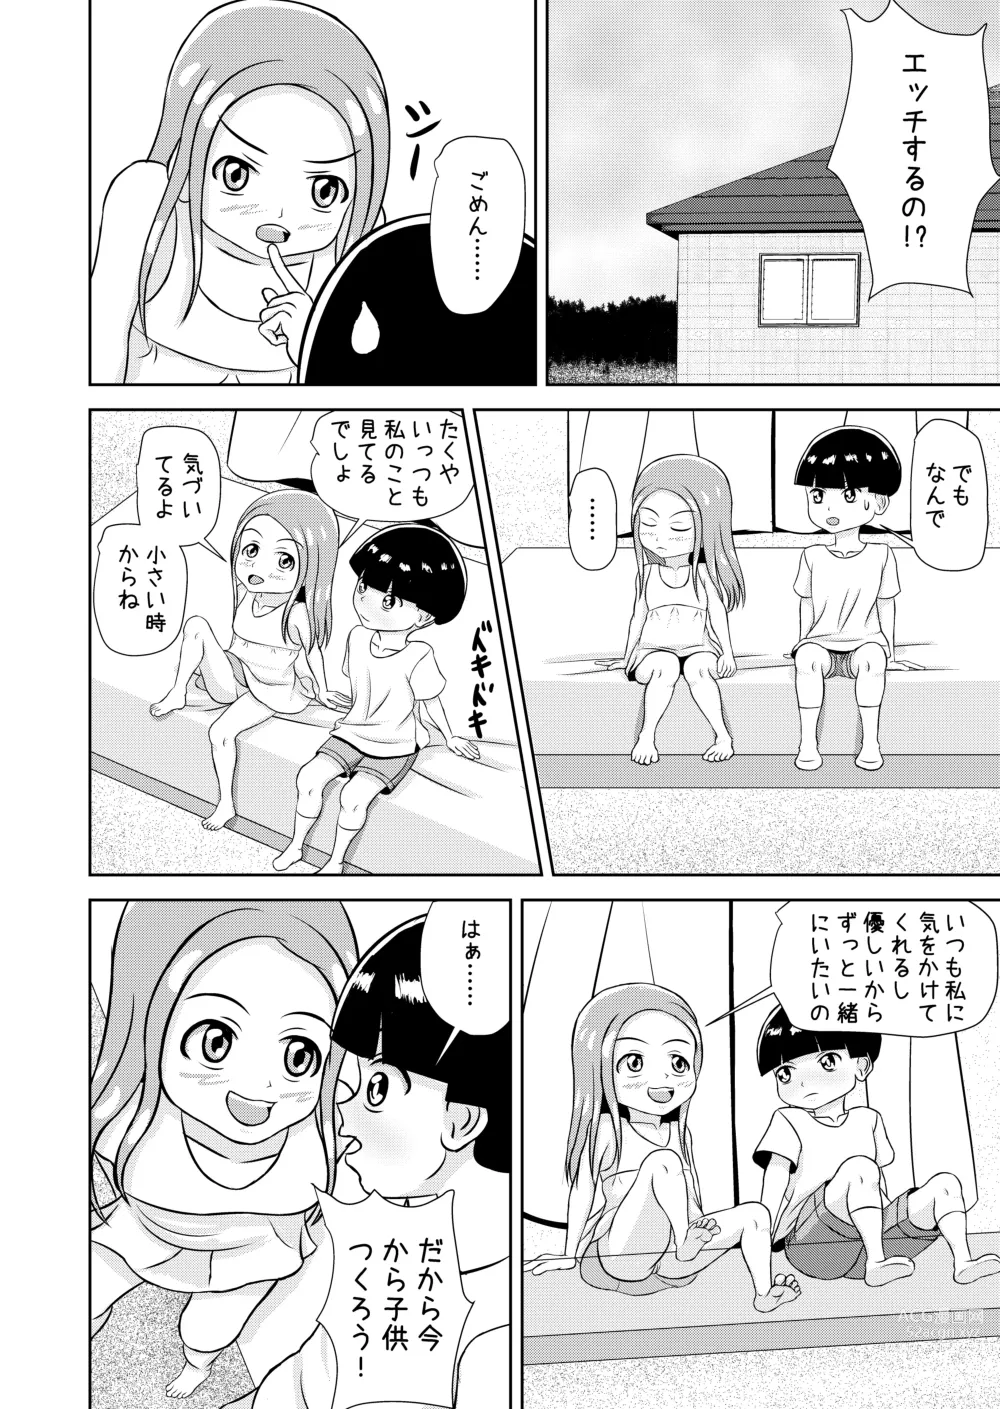 Page 86 of doujinshi Watashi to Dare no Ko?